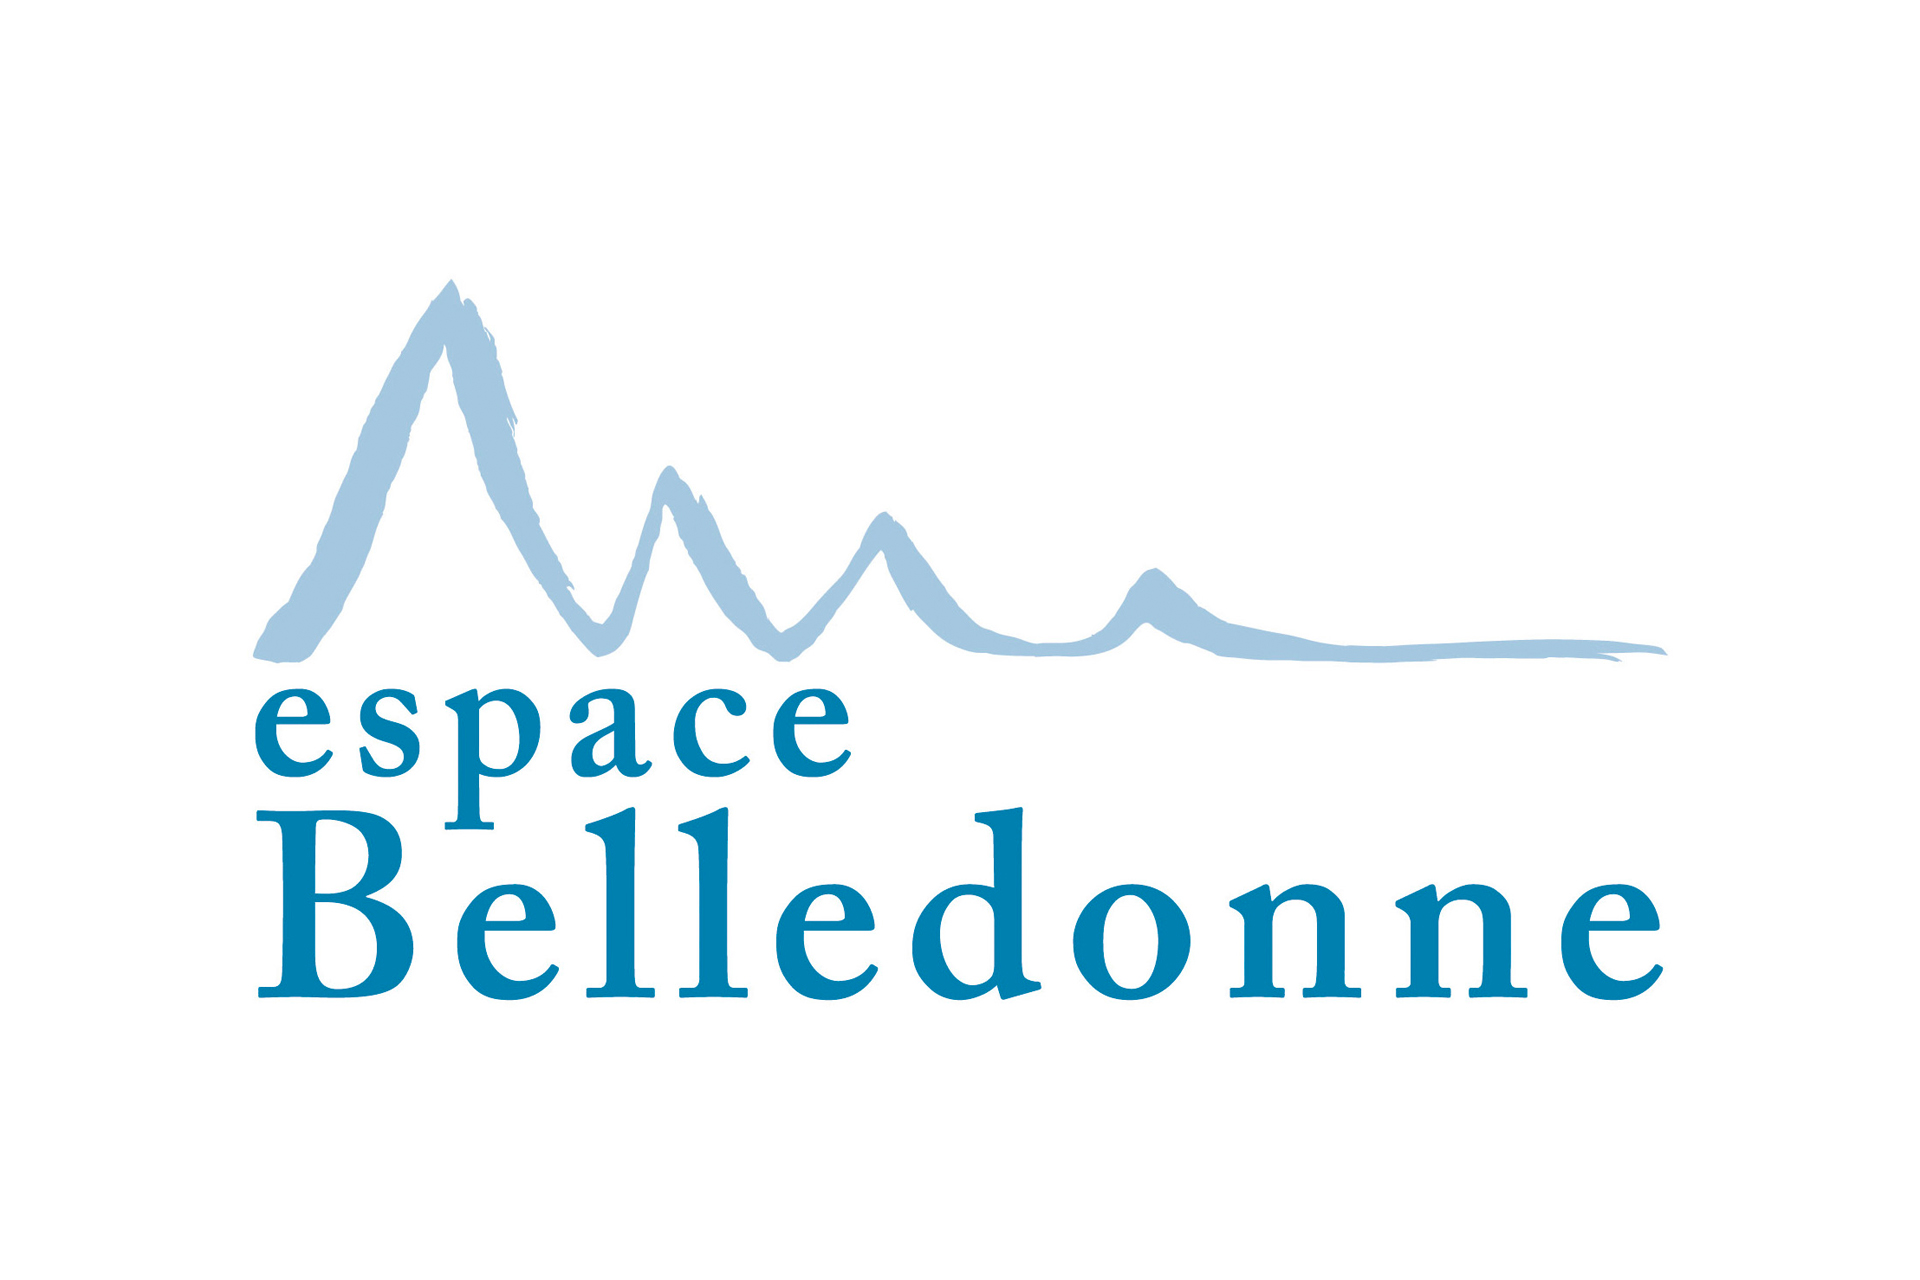 Chamrousse logo partner institution espace belledonne resort grenoble isere french alps france - © Espace Belledonne